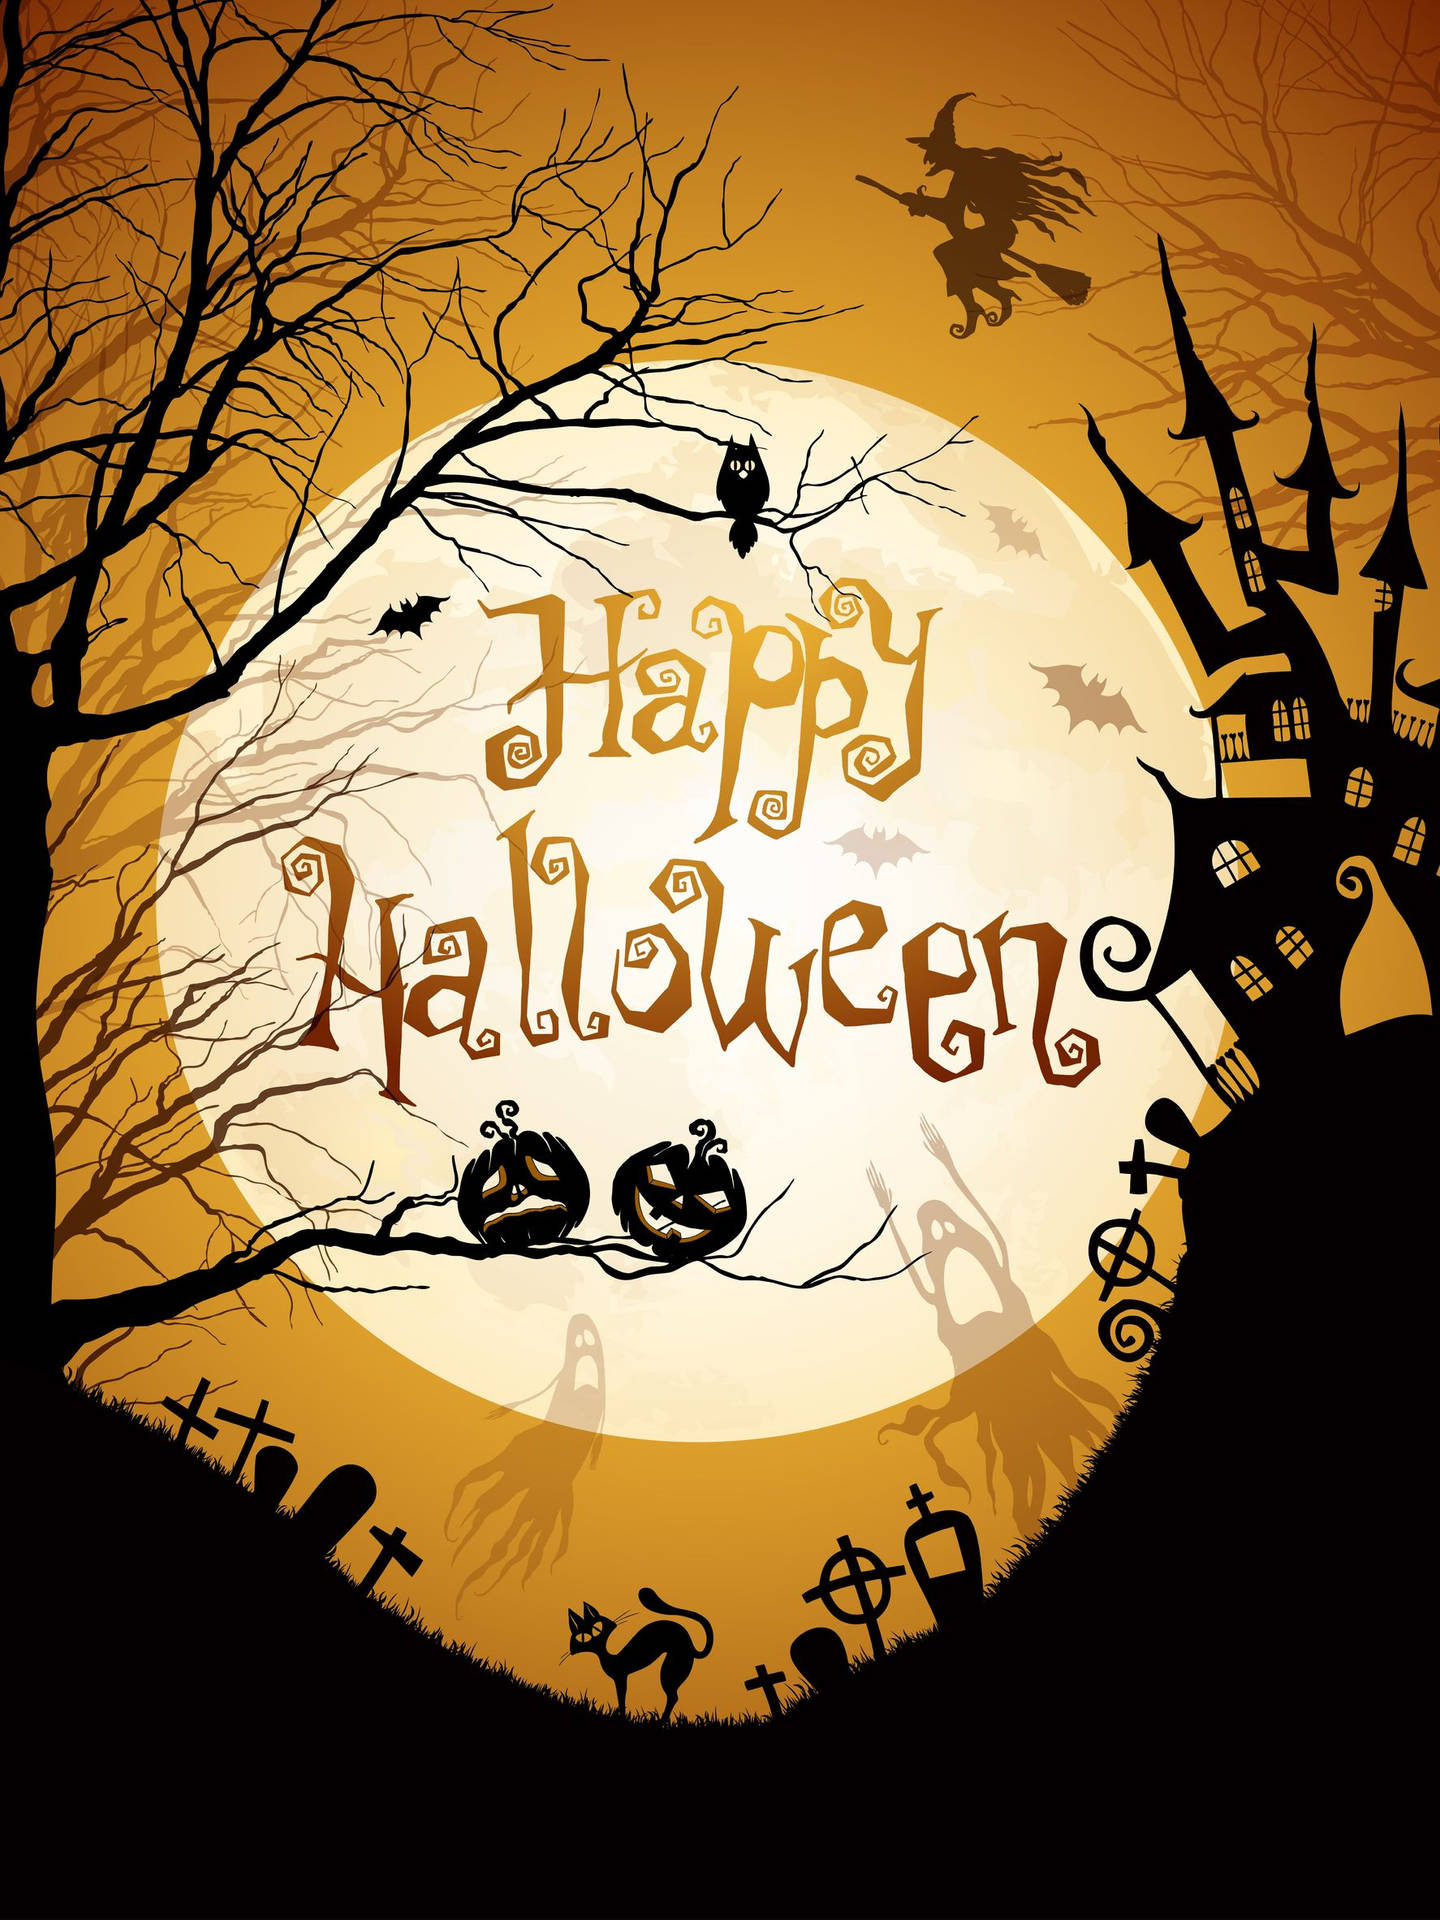 Celebraun Divertente E Spaventoso Halloween Quest'anno! Sfondo